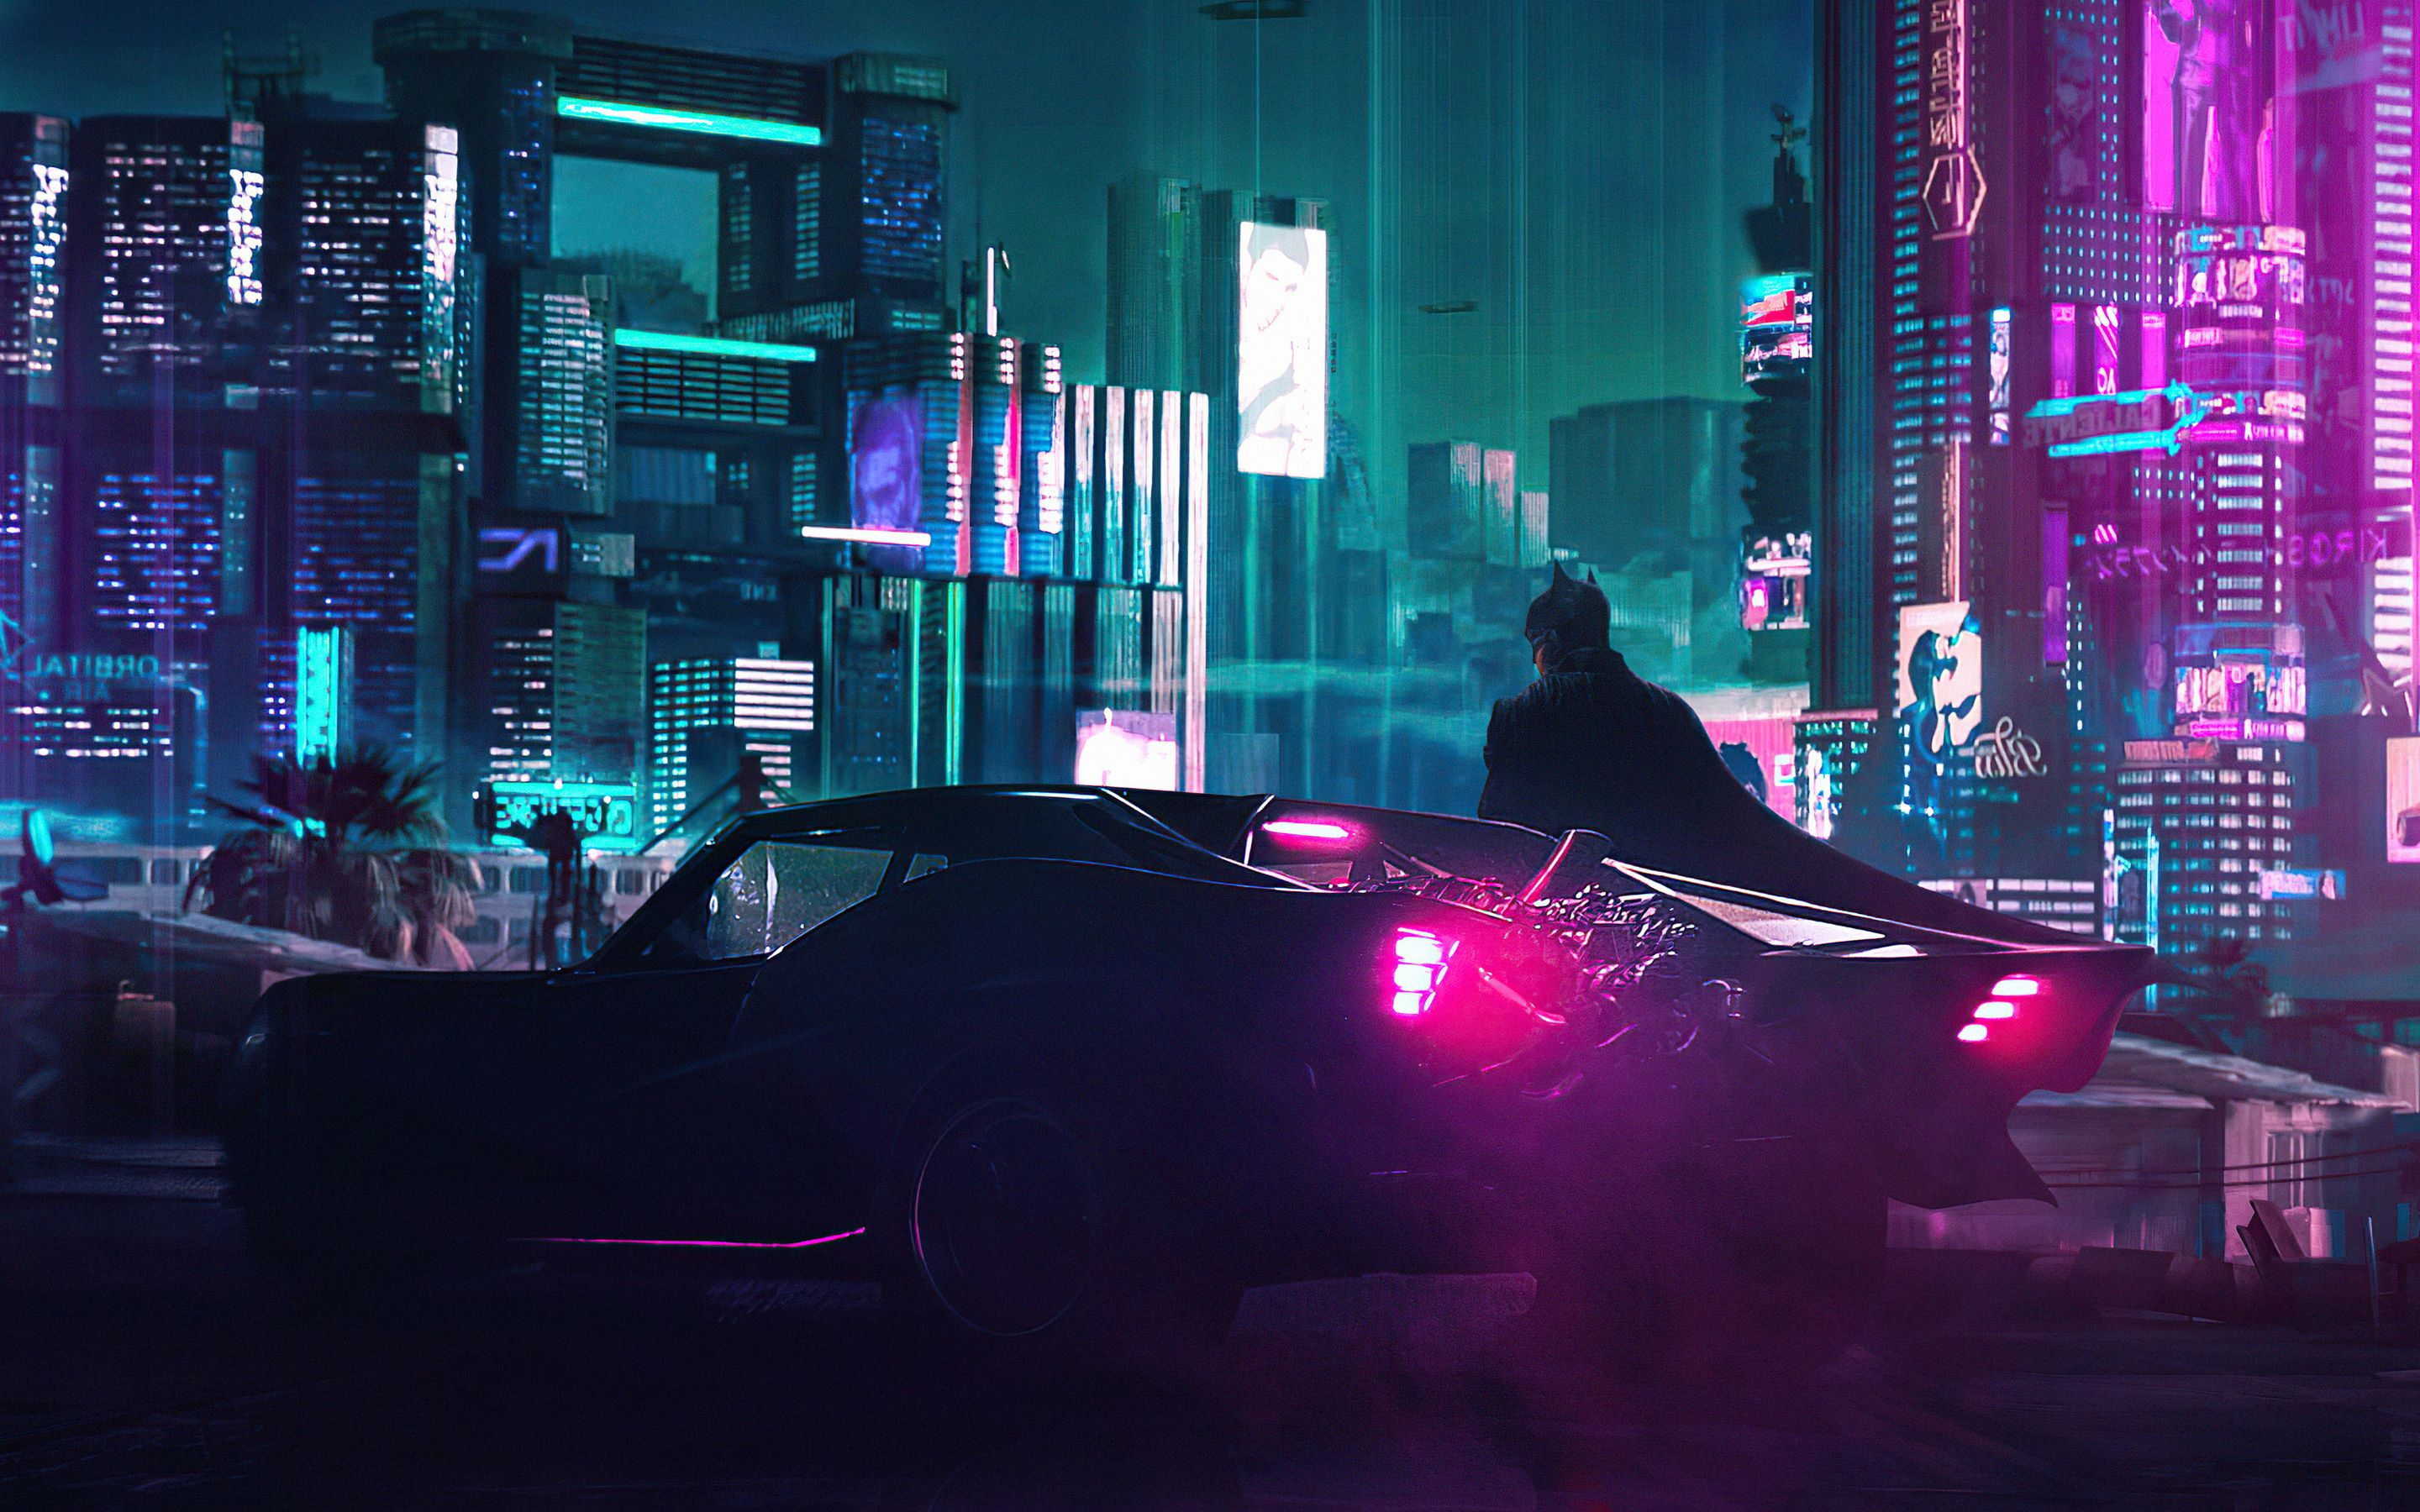 A cyberpunk artwork of a man standing next to a car in a neon lit city - Cyberpunk 2077